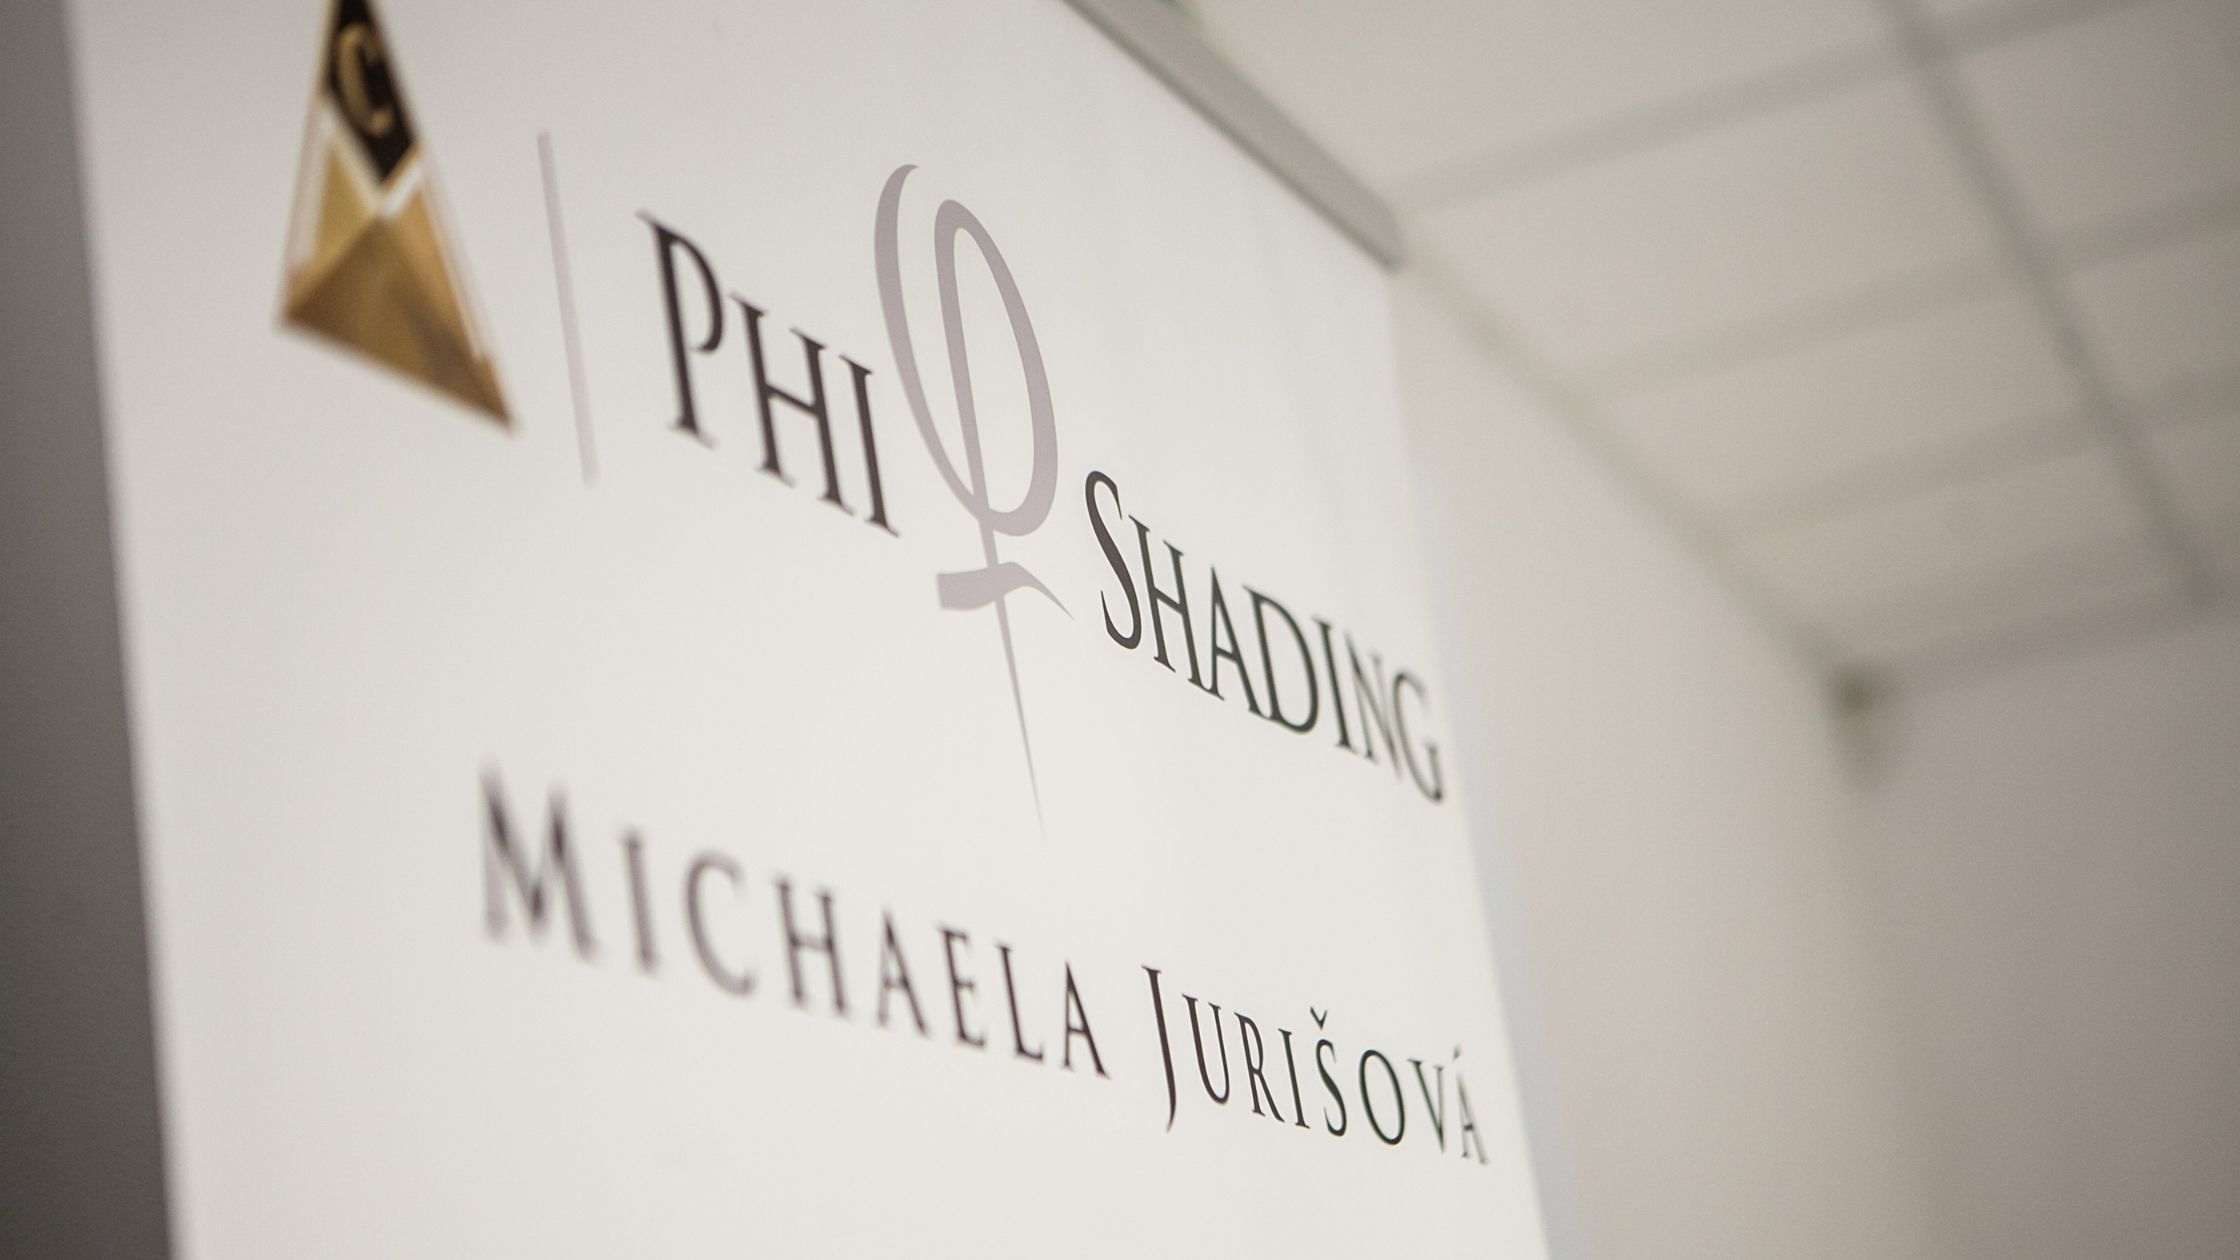 Obrázok logo Phishading Michaela Jurišová